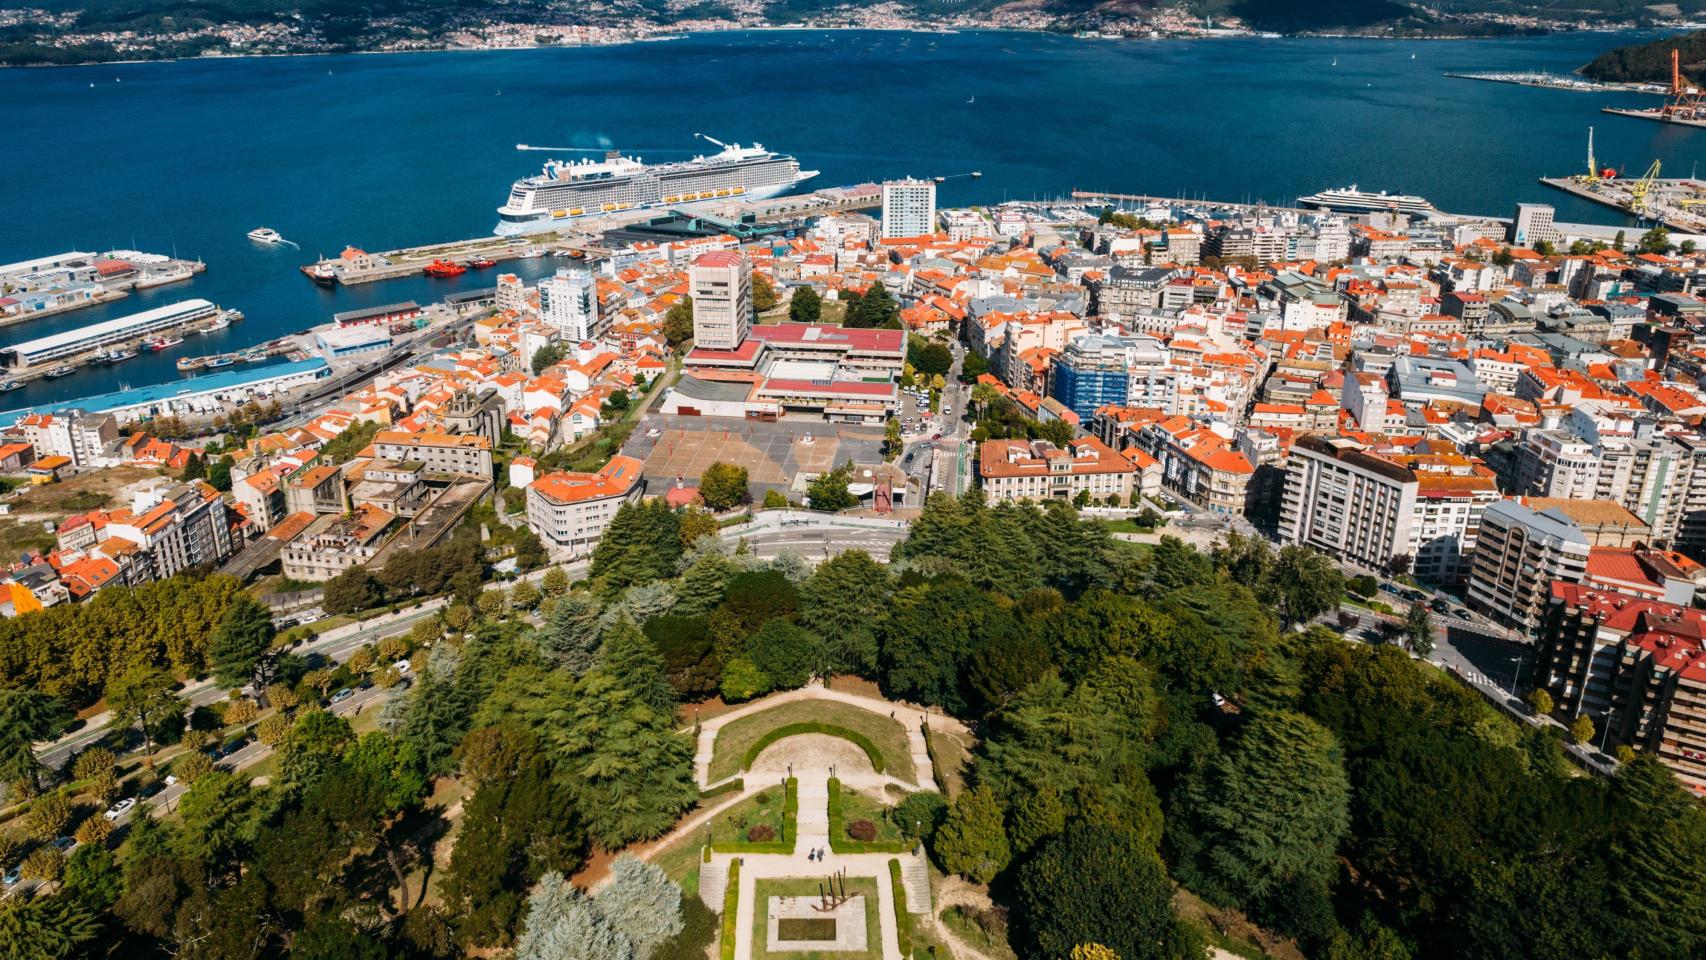 Imagen aérea de la ciudad de Vigo